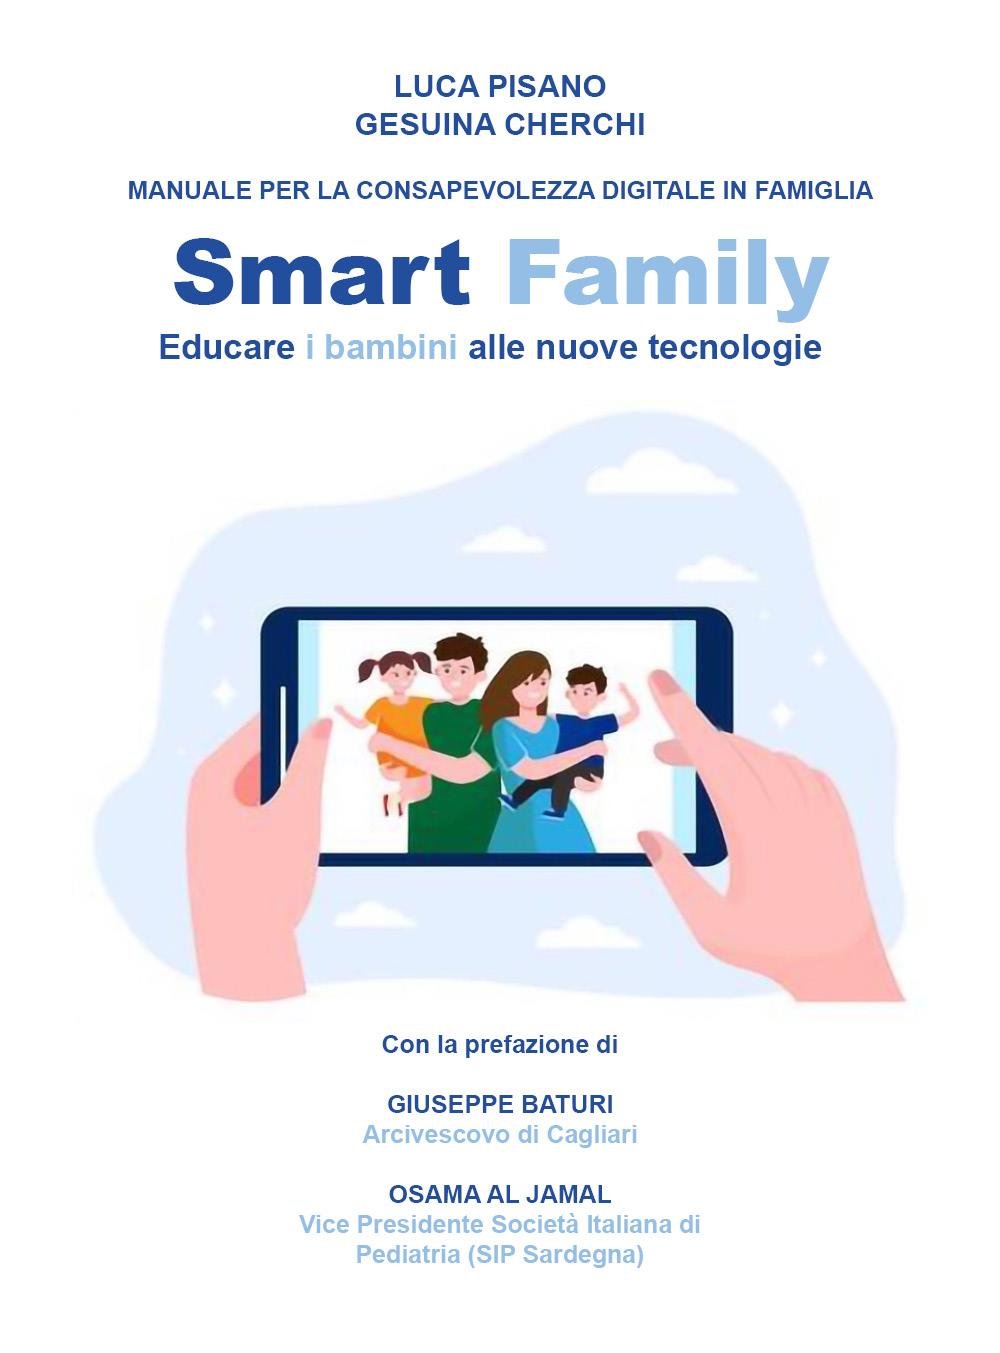 Manuale per la consapevolezza digitale in famiglia. SMART FAMILY: Educare i bambini alle nuove tecnologie